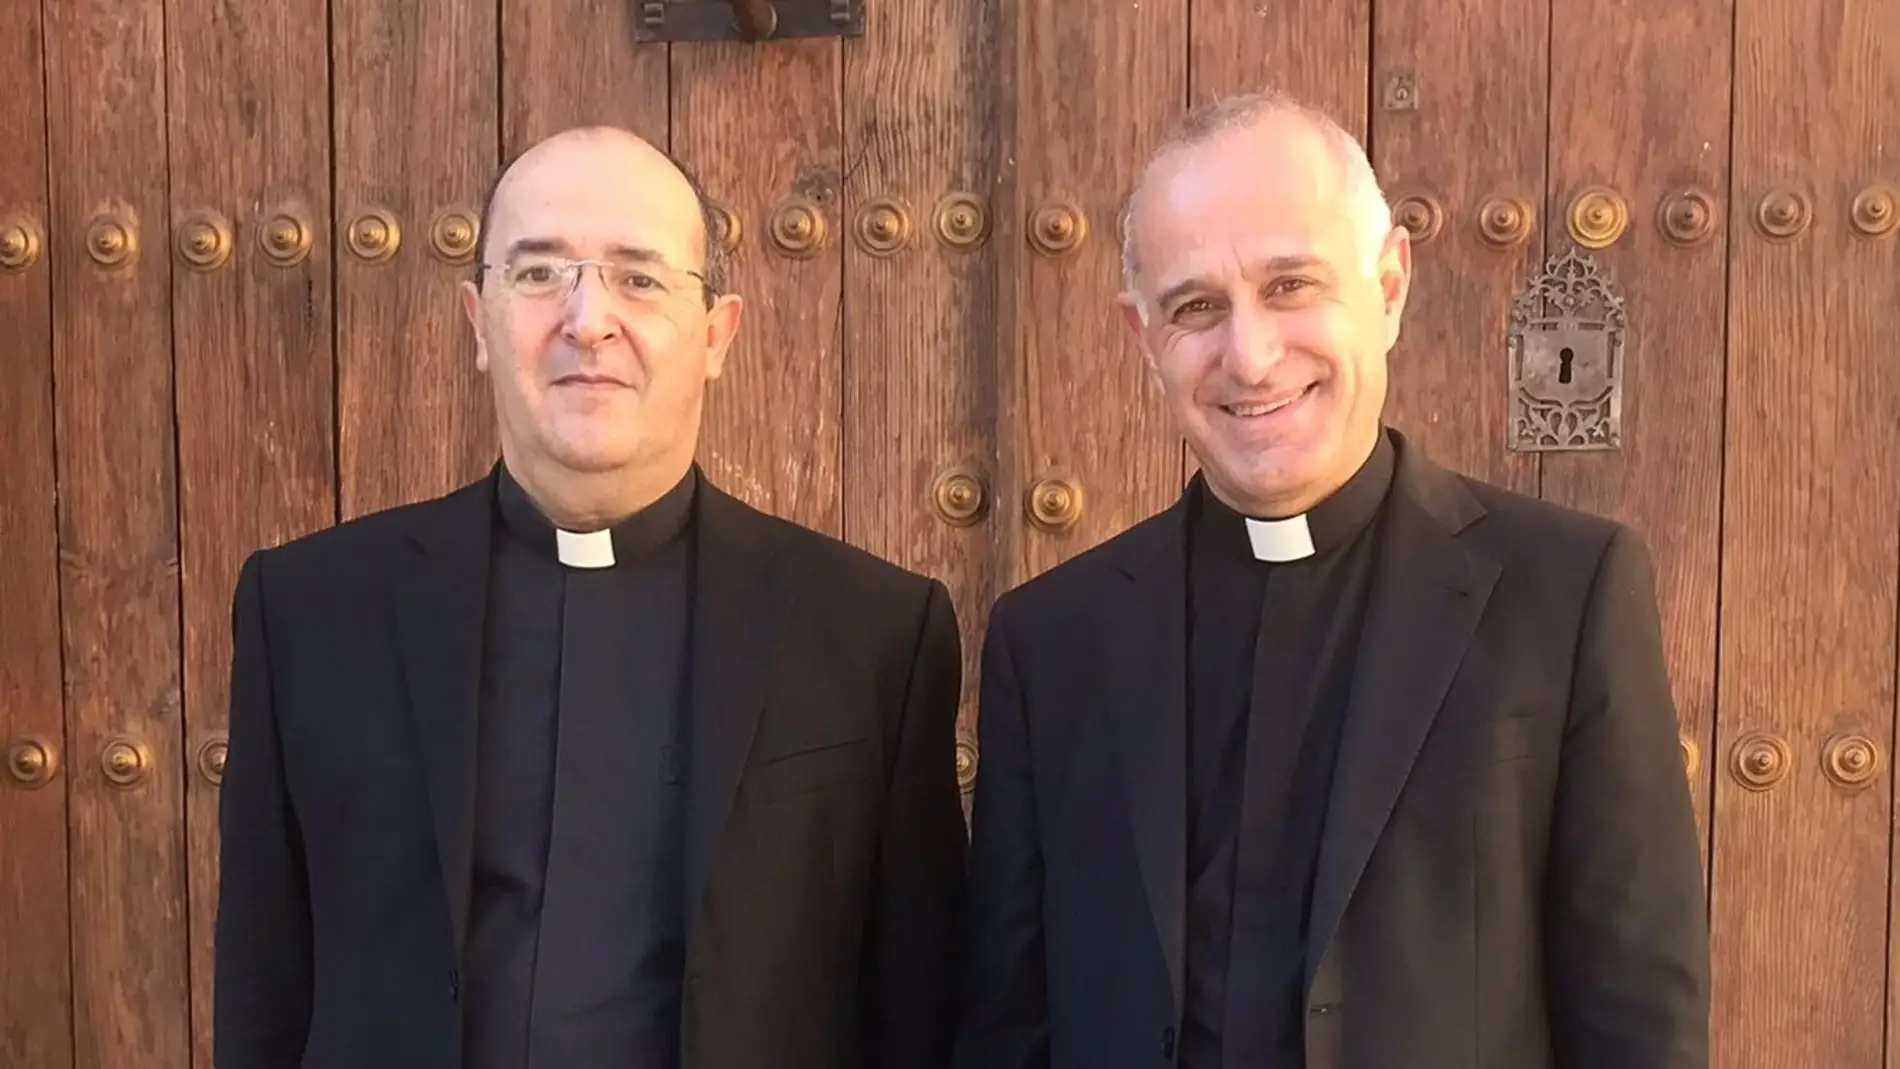 Diego Zambrano vuelve a ser el vicario general de Coria-Cáceres tras la toma de posesión de Jesús Pulido como obispo